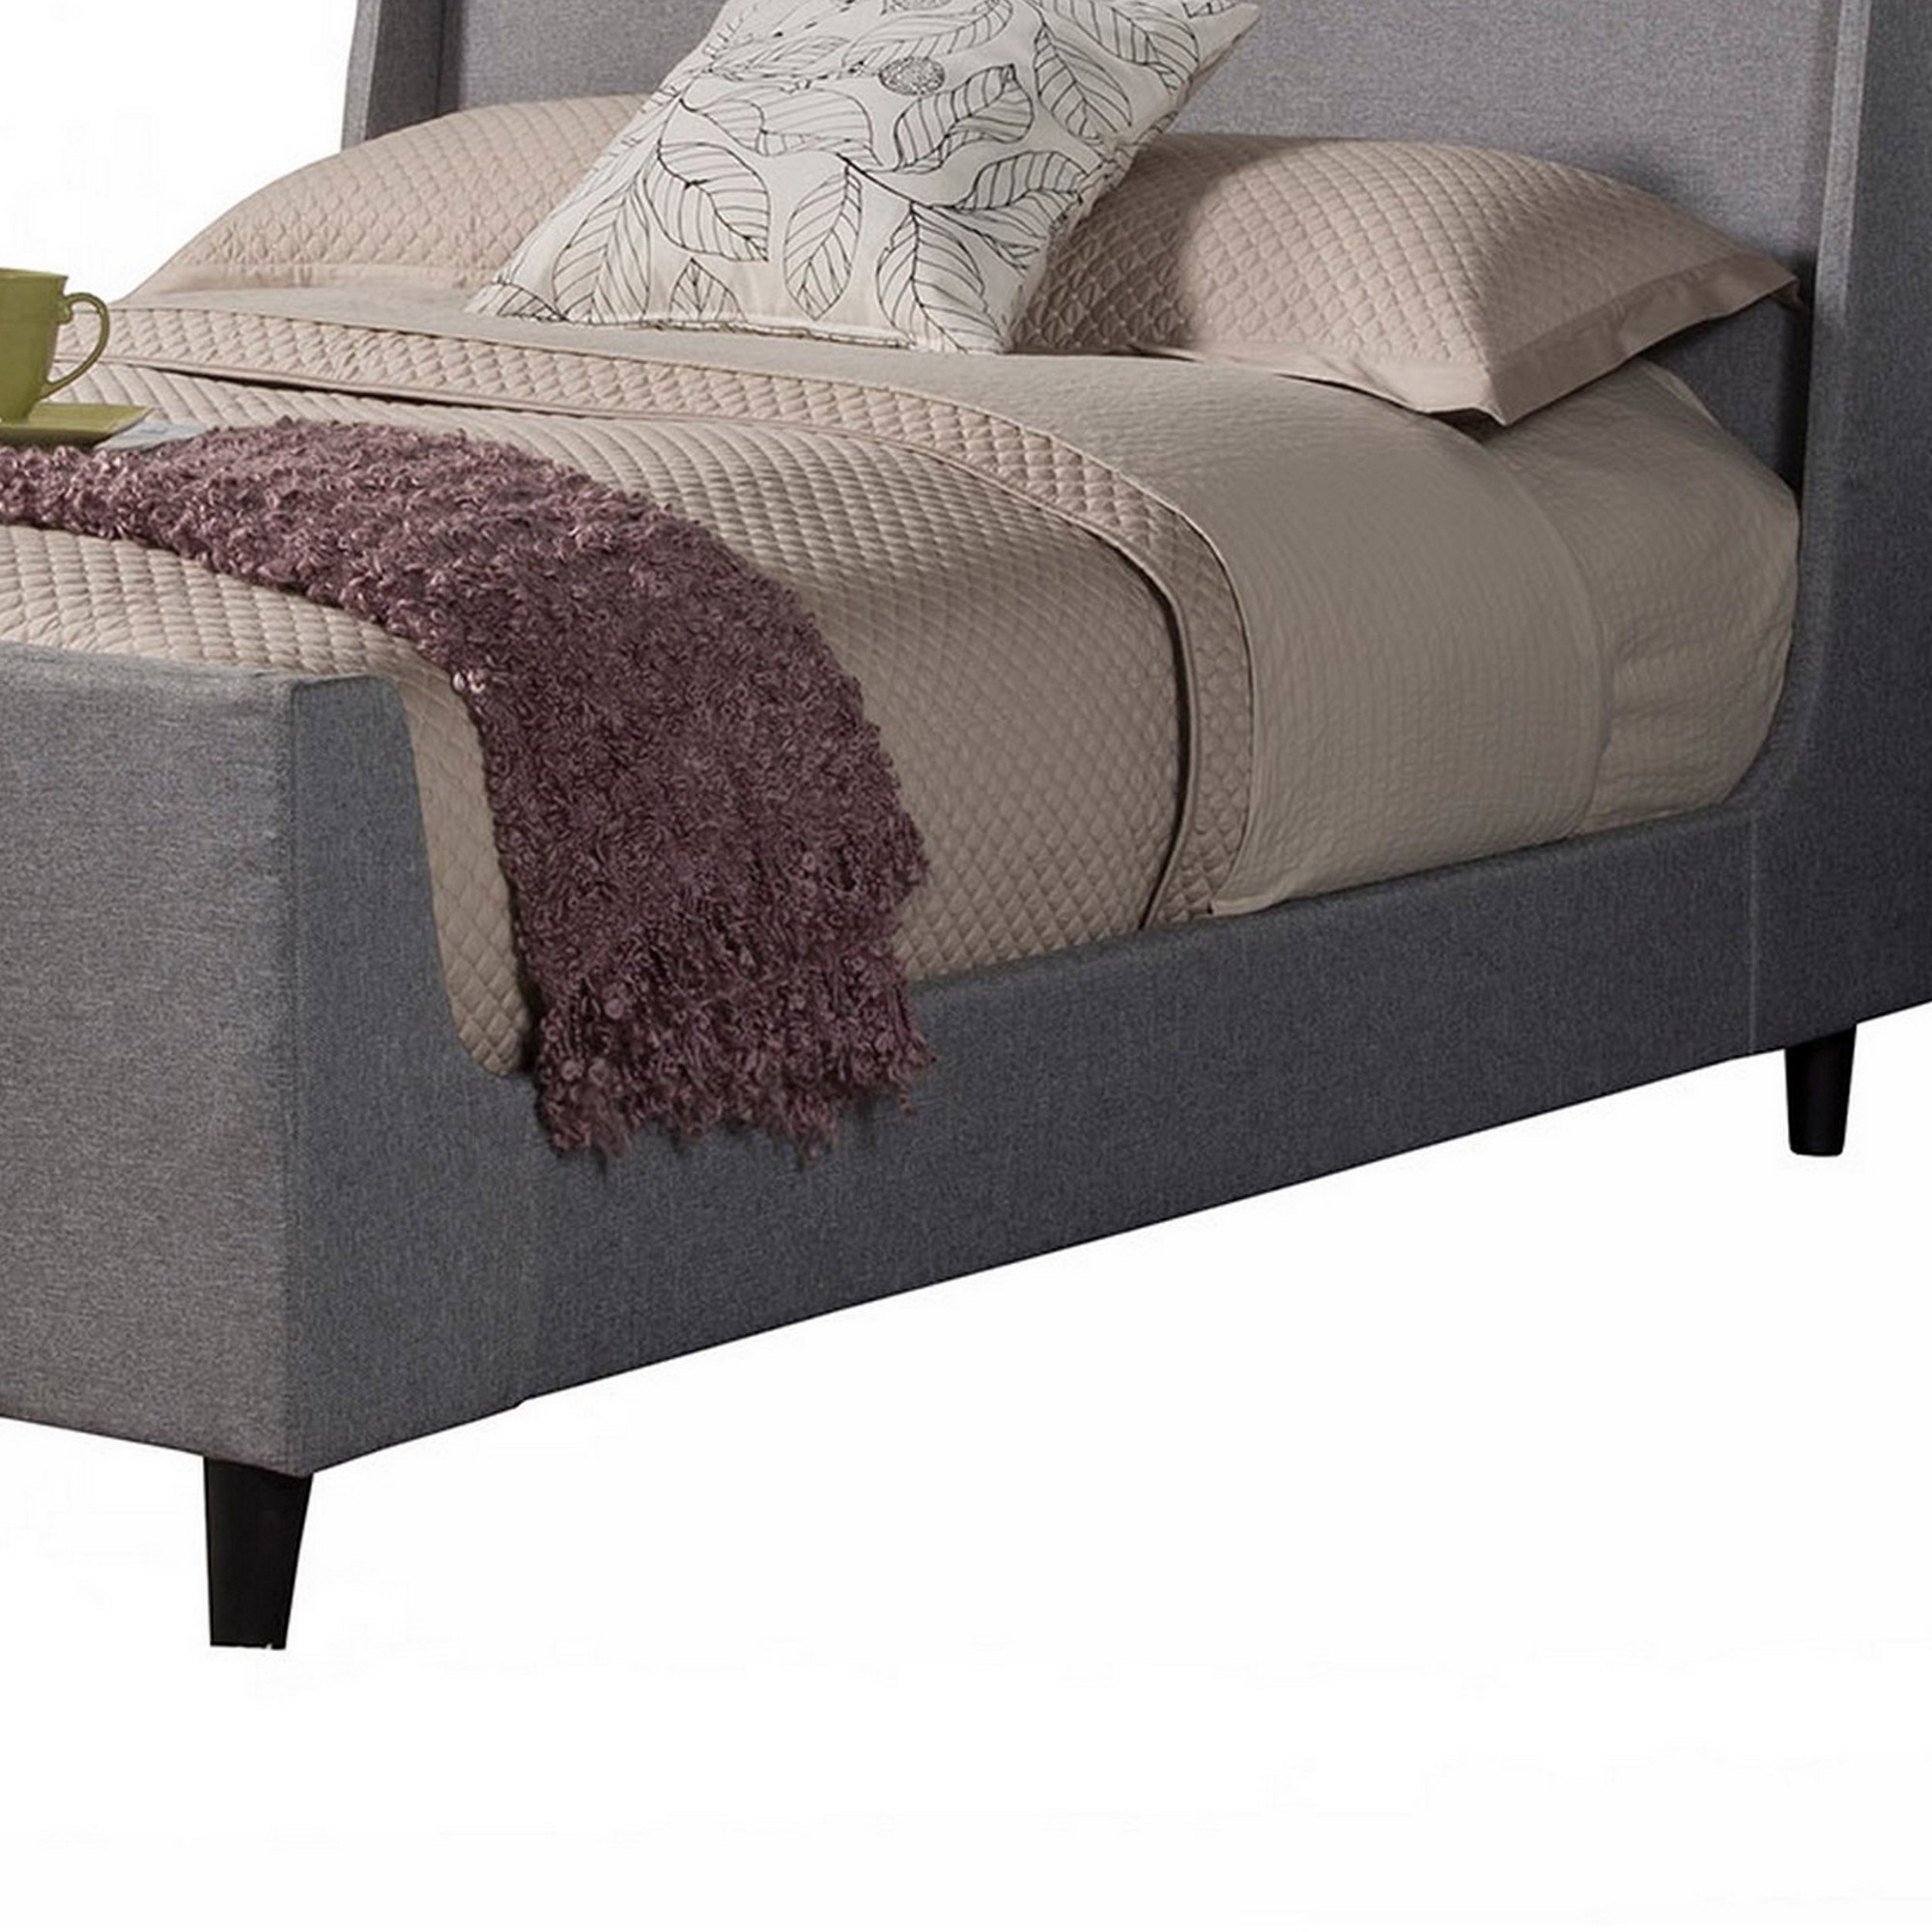 Eva Low Profile Full Size Bed, Gray Linen Upholstery, Shelter Headboard- Saltoro Sherpi